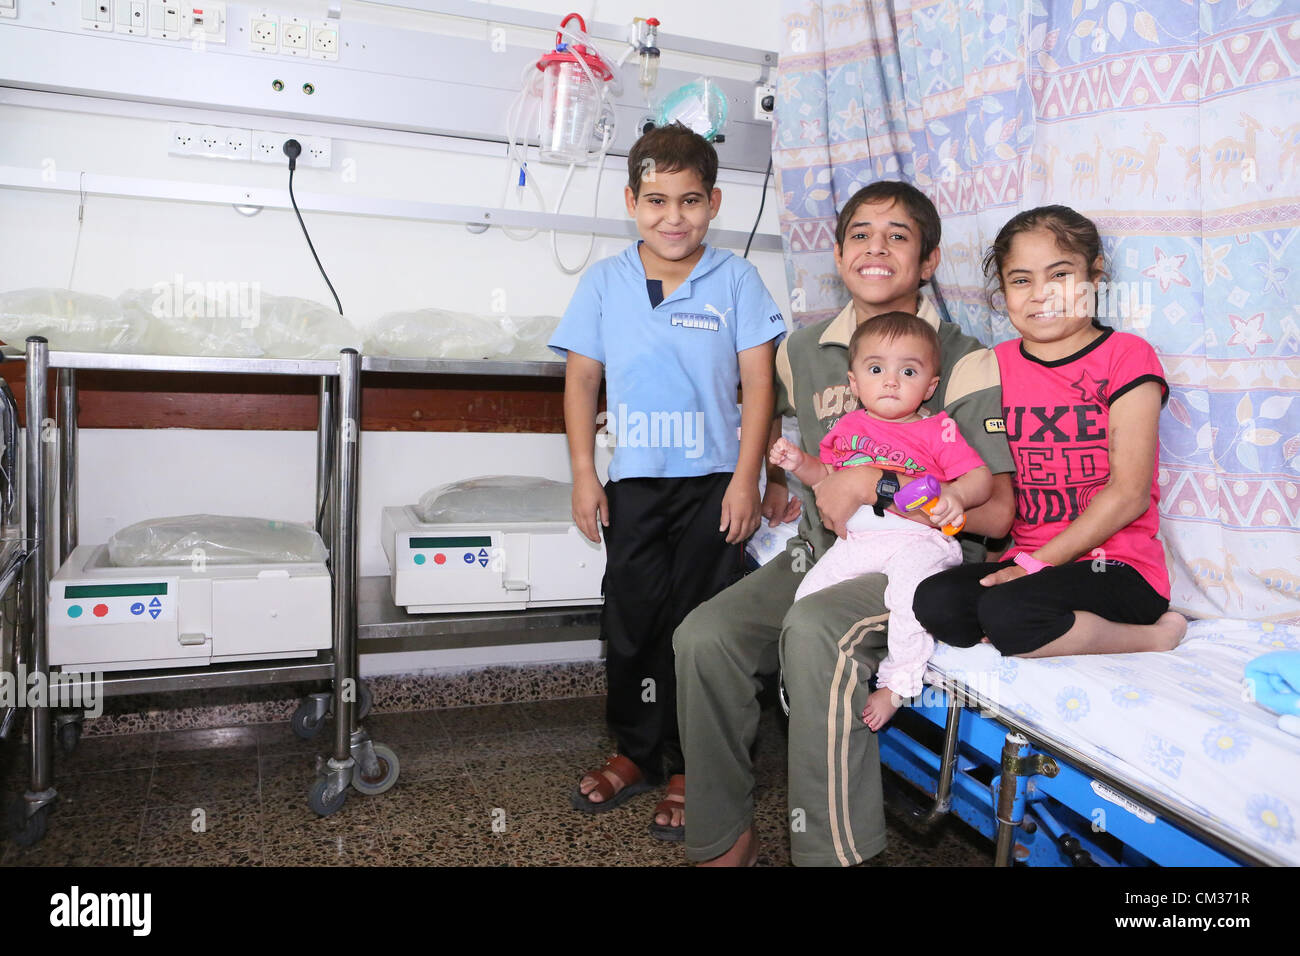 Cuatro niños de Gaza, Mohaned, Hadeel, hermano de Hadeel Achmad y seis meses de edad, Lian, recibir tratamiento médico para salvar la vida en el Centro Médico Rambam. En Haifa, Israel. El 10 de septiembre de 2012. Crédito de la foto: - RHCC Pioter Fliter. Cuatro niños de Gaza, nefrología a pacientes que sufren de insuficiencia renal, con edades de 6 meses, los 12 y los 15 años, recibiendo terapia salvan la vida mientras esperan trasplantes renales en el Centro Médico Rambam. Foto de stock